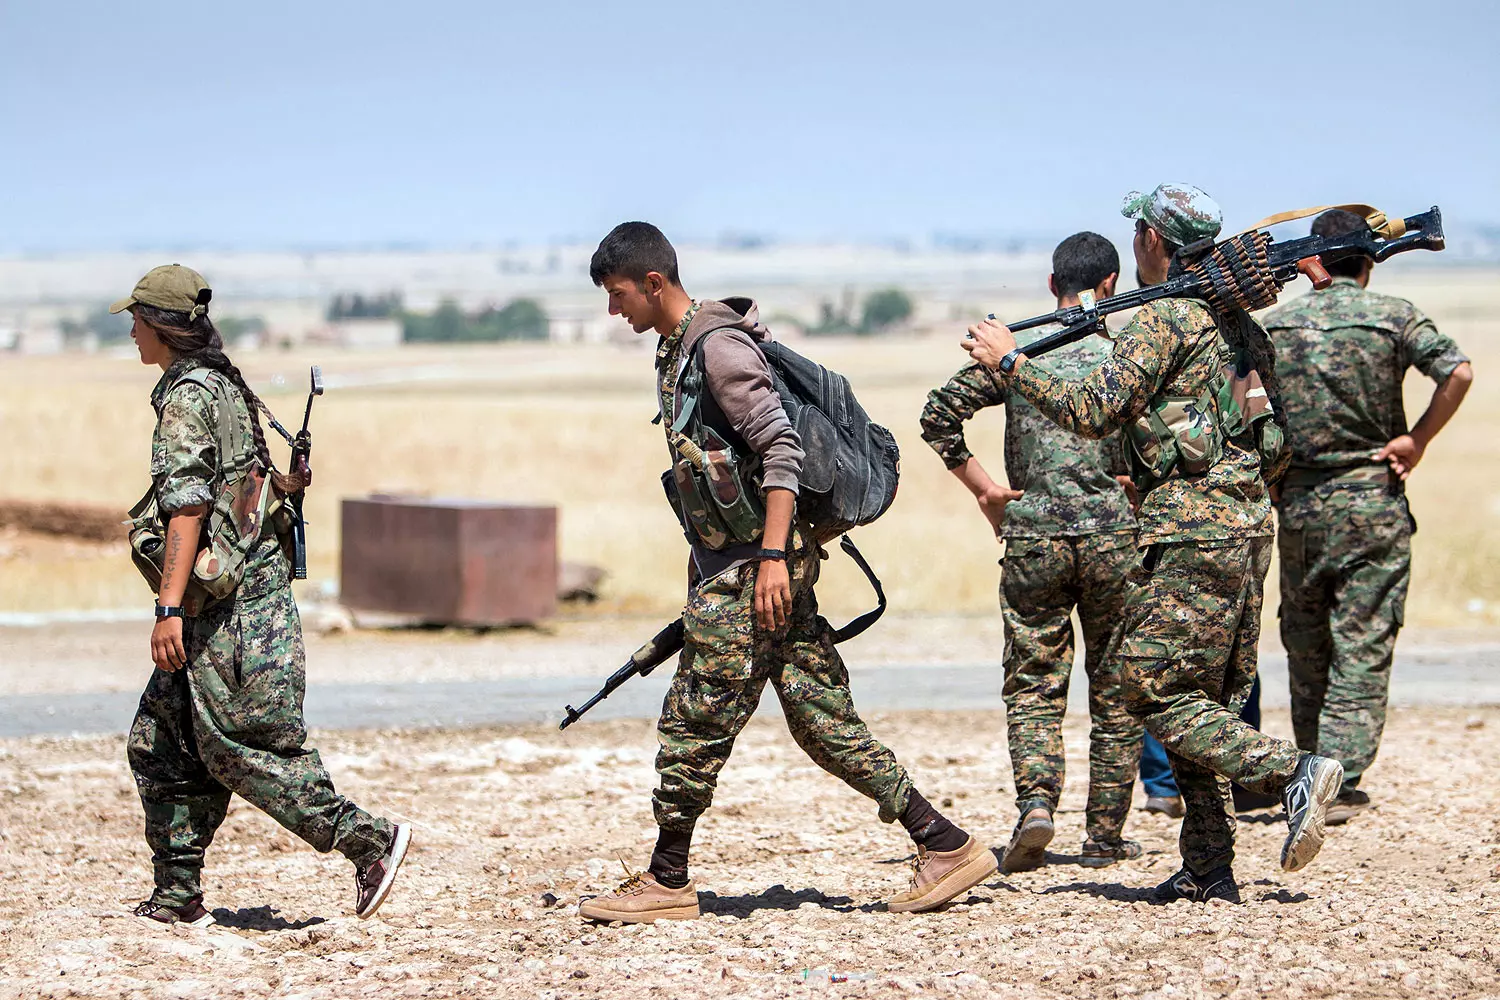 שיתוף הפעולה הוגבר מאוד בחודש האחרון. המיליציה הכורדית YPG